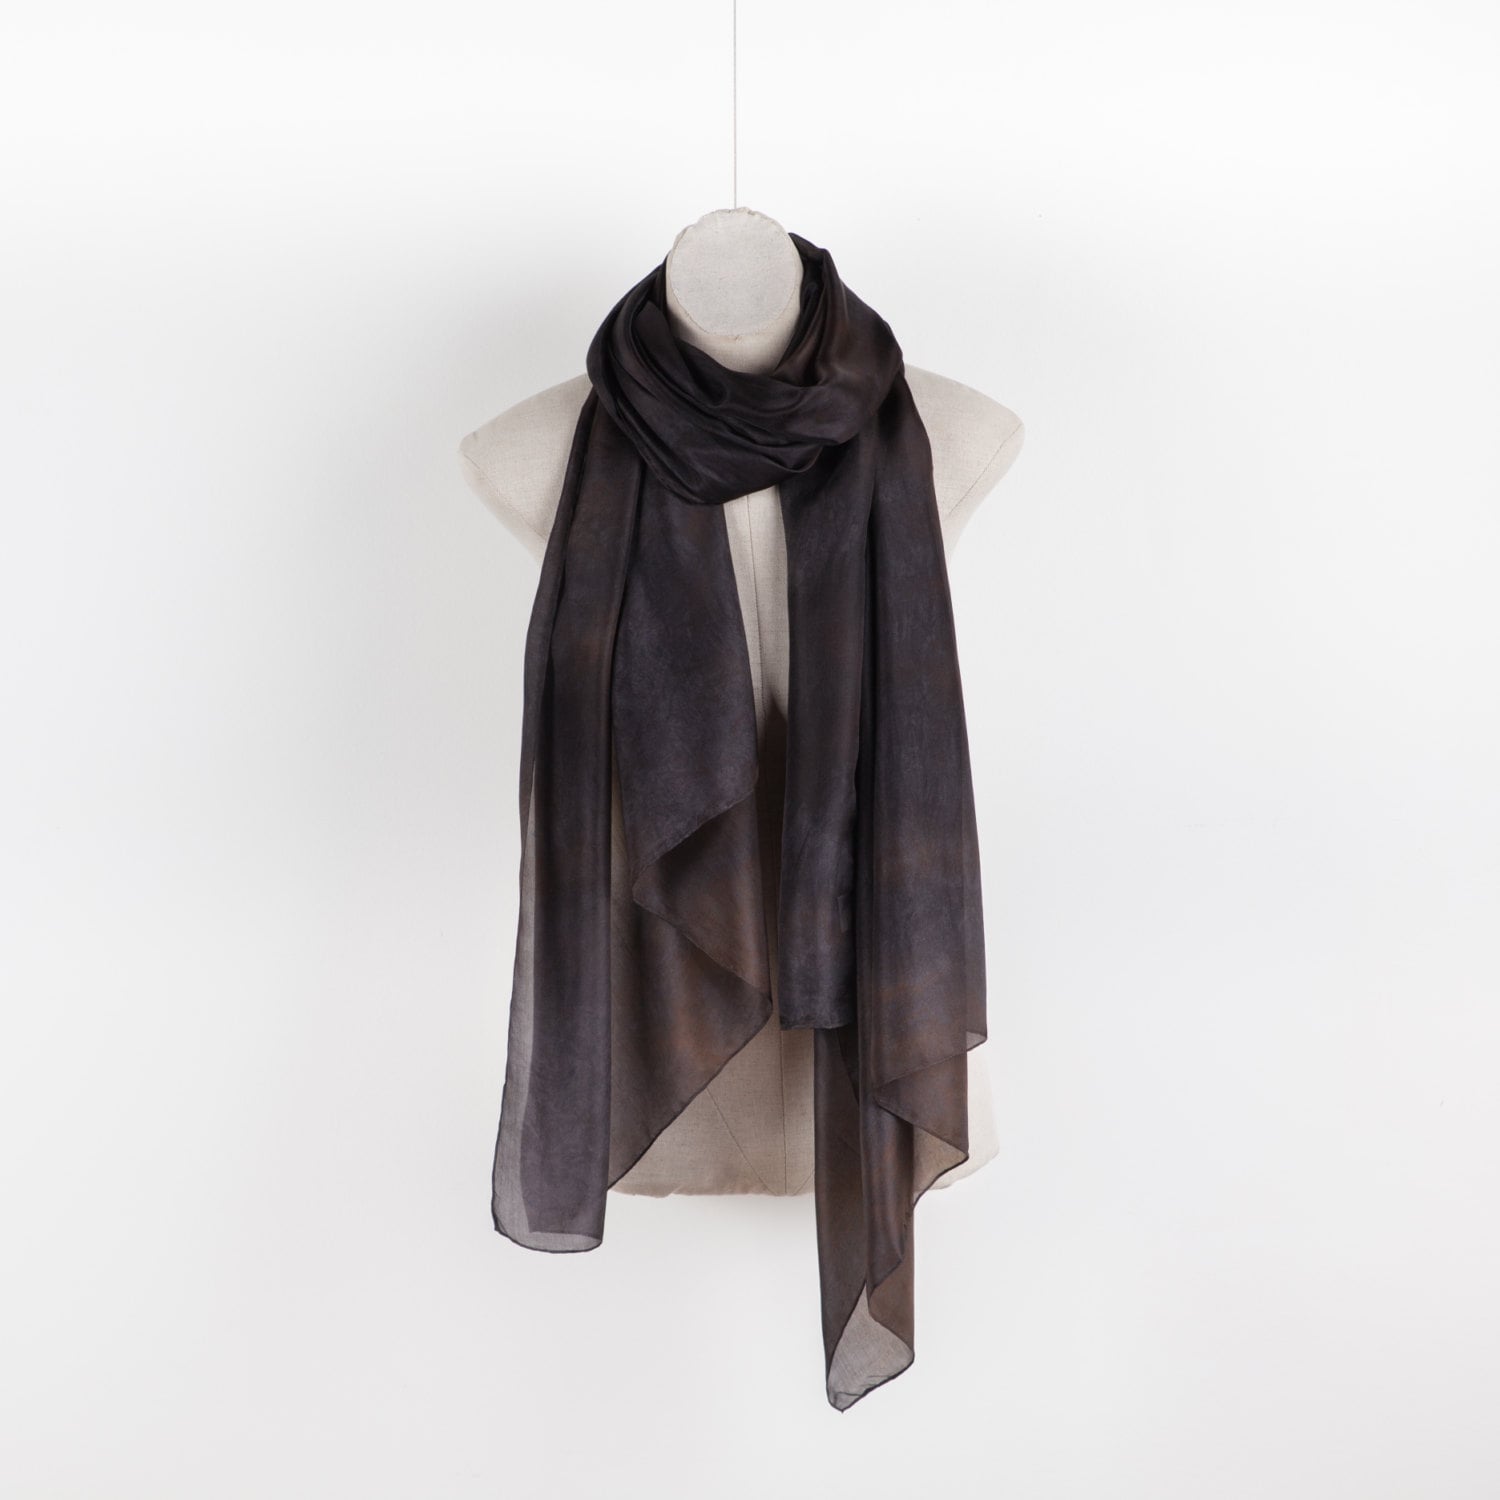 Mostly black silk scarf / Classic black silk by CeliaEtcetera